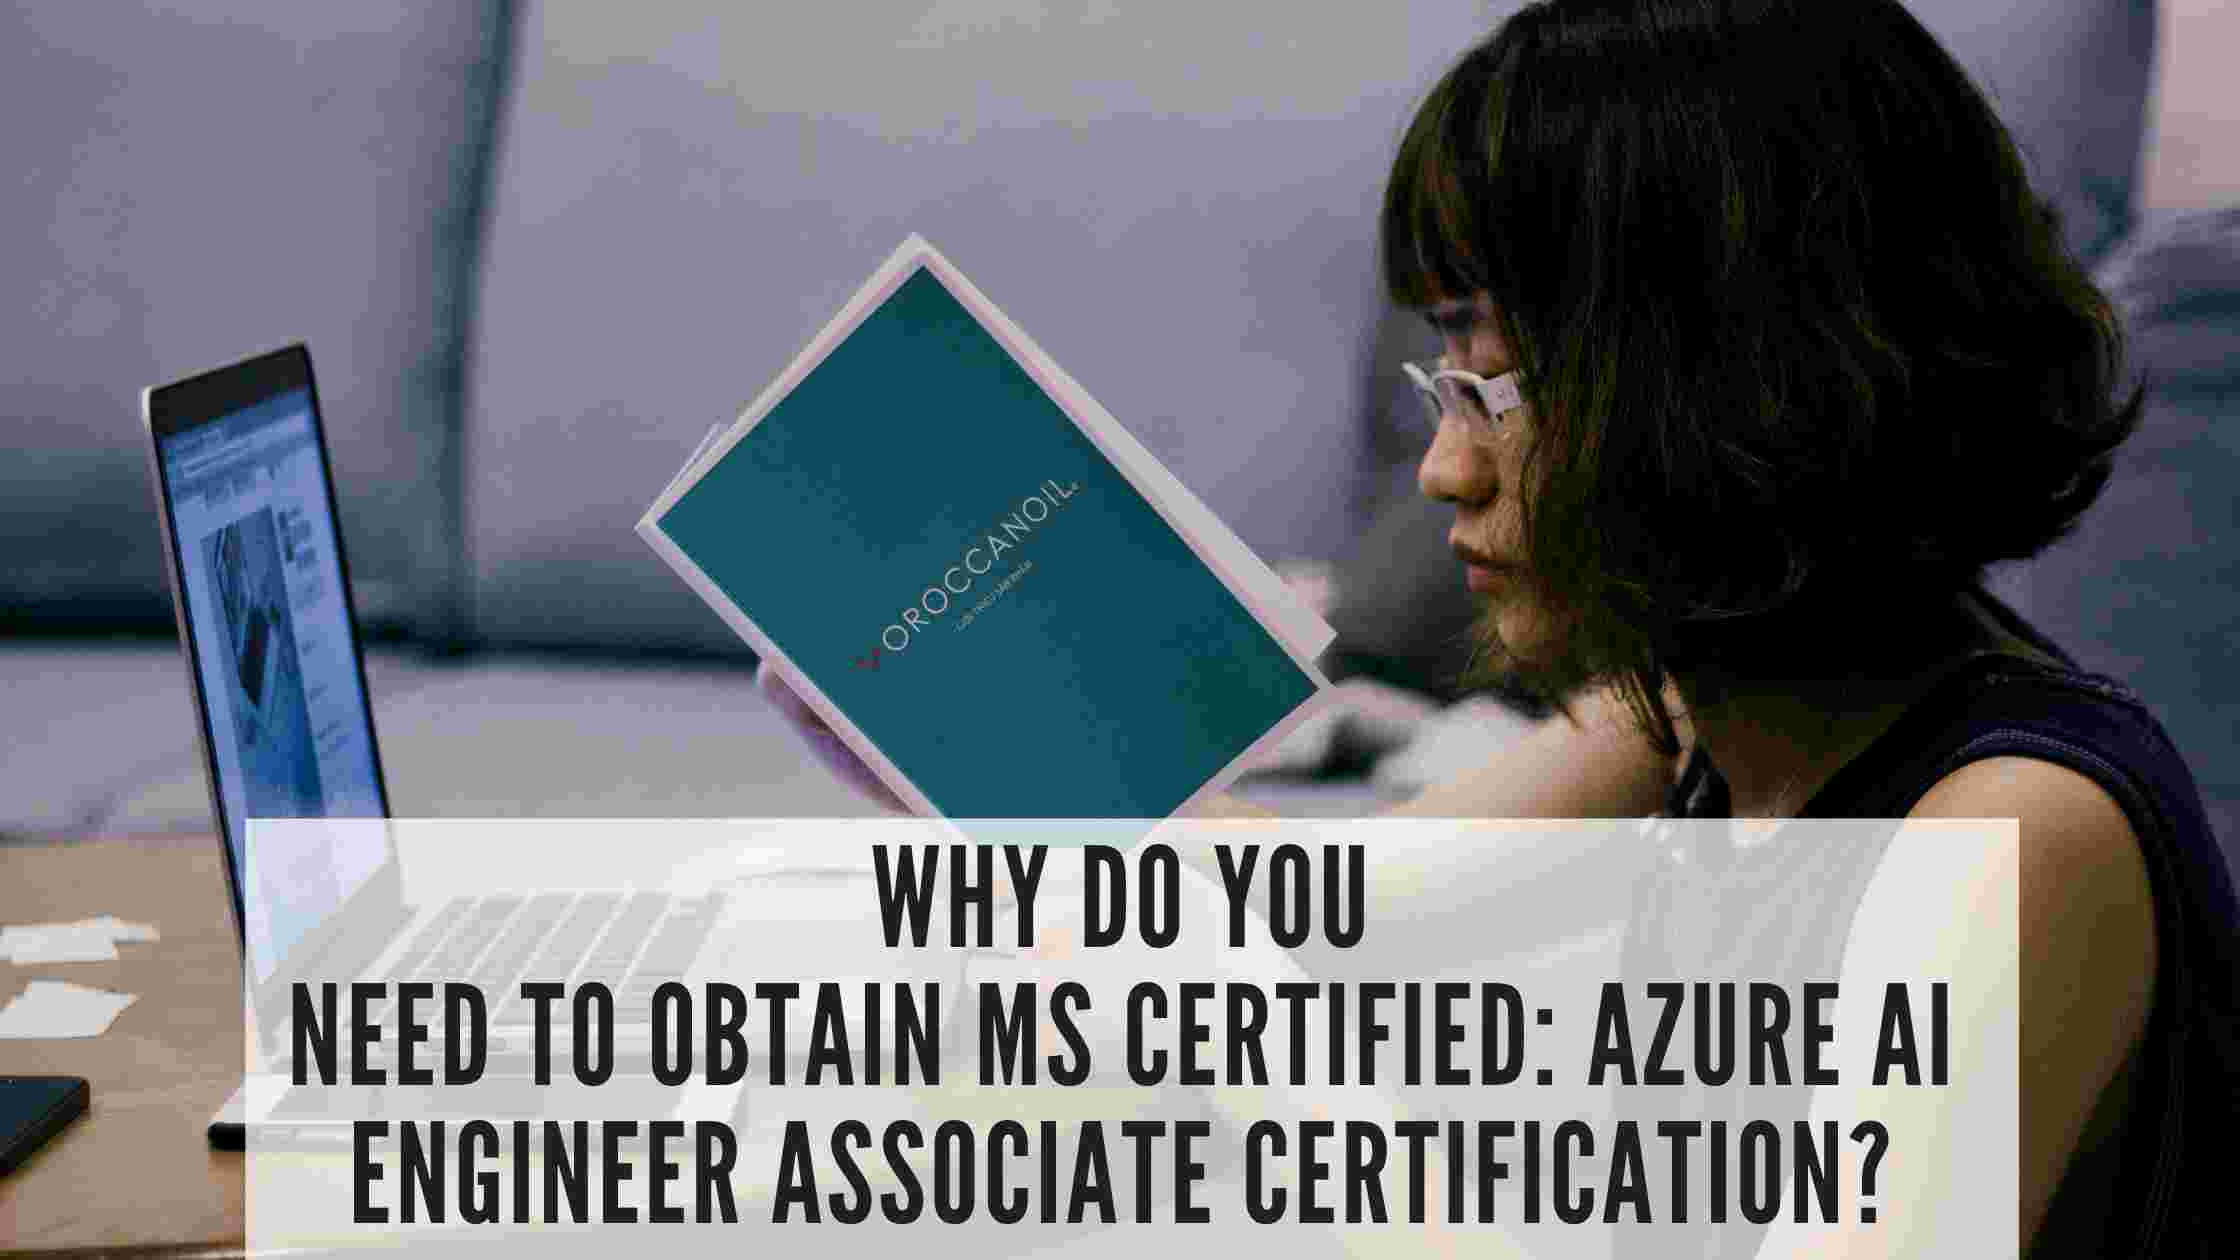 Azure AI Engineer Associate Certification